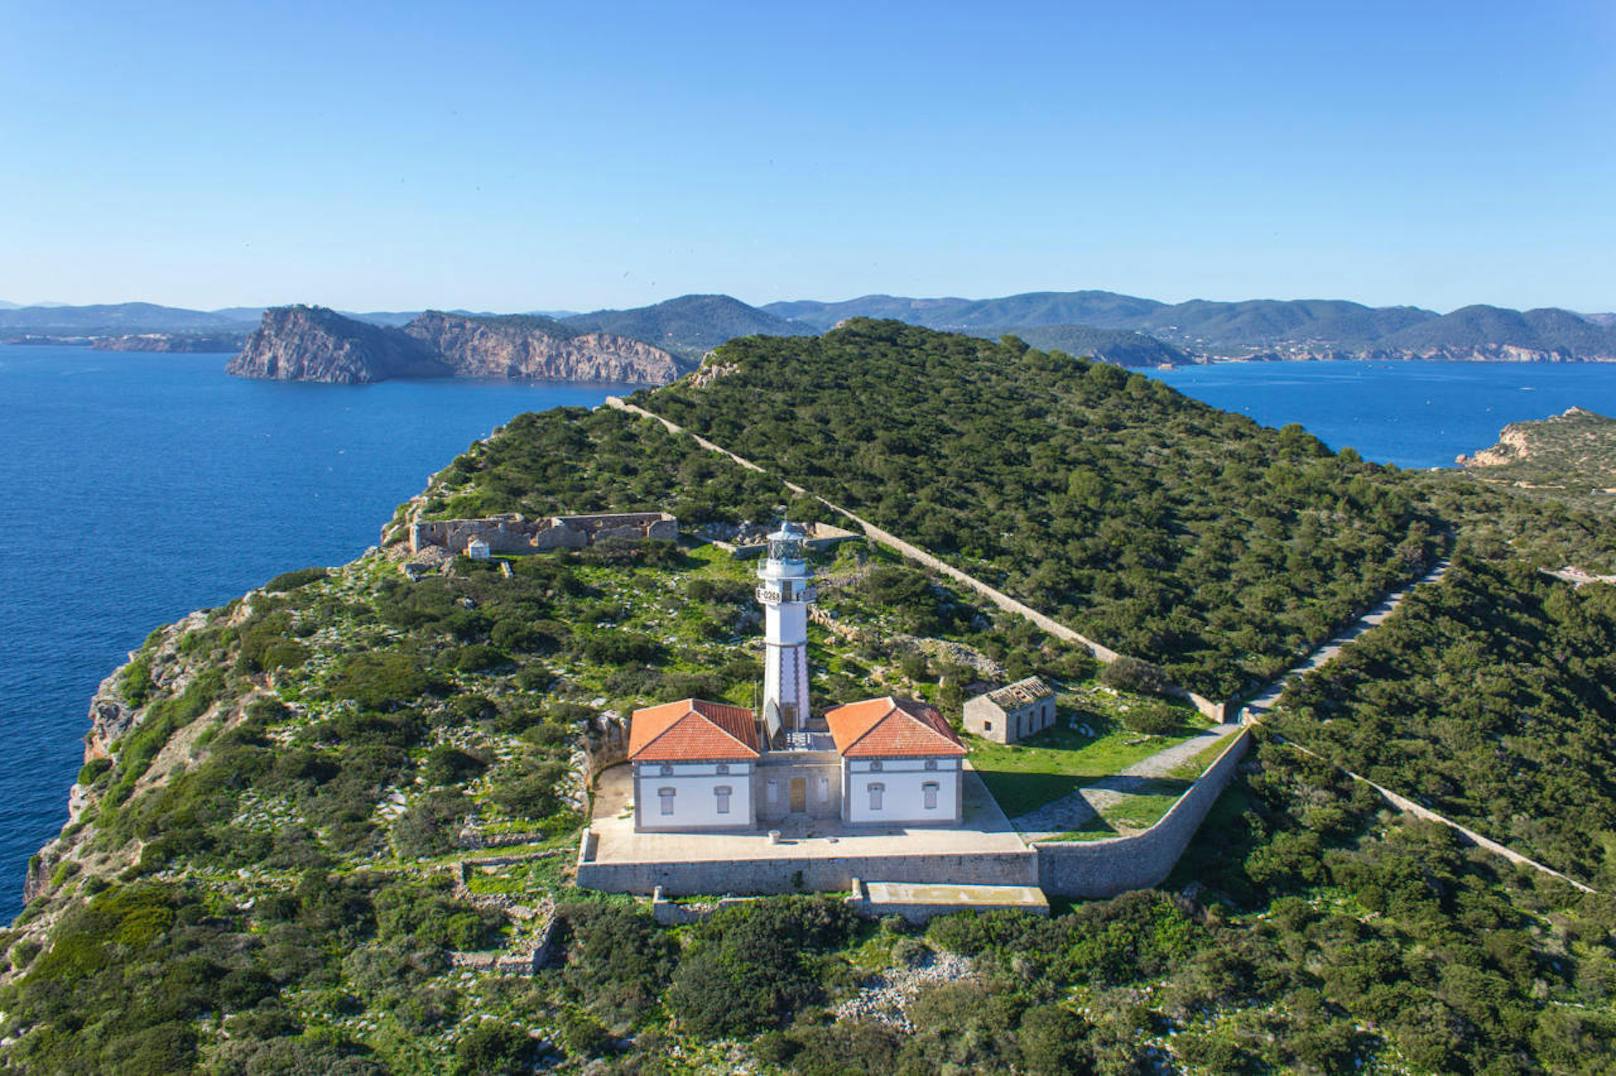 Ja, auch in Europa gibt es Privatinseln, diese liegt vor Ibiza. Sie verfügt sogar über einen eigenen Leuchtturm. Ausserdem können sich Gäste auf einer Wohnfläche von 600 Quadratmetern und 60 Hektaren Natur pur ausbreiten.